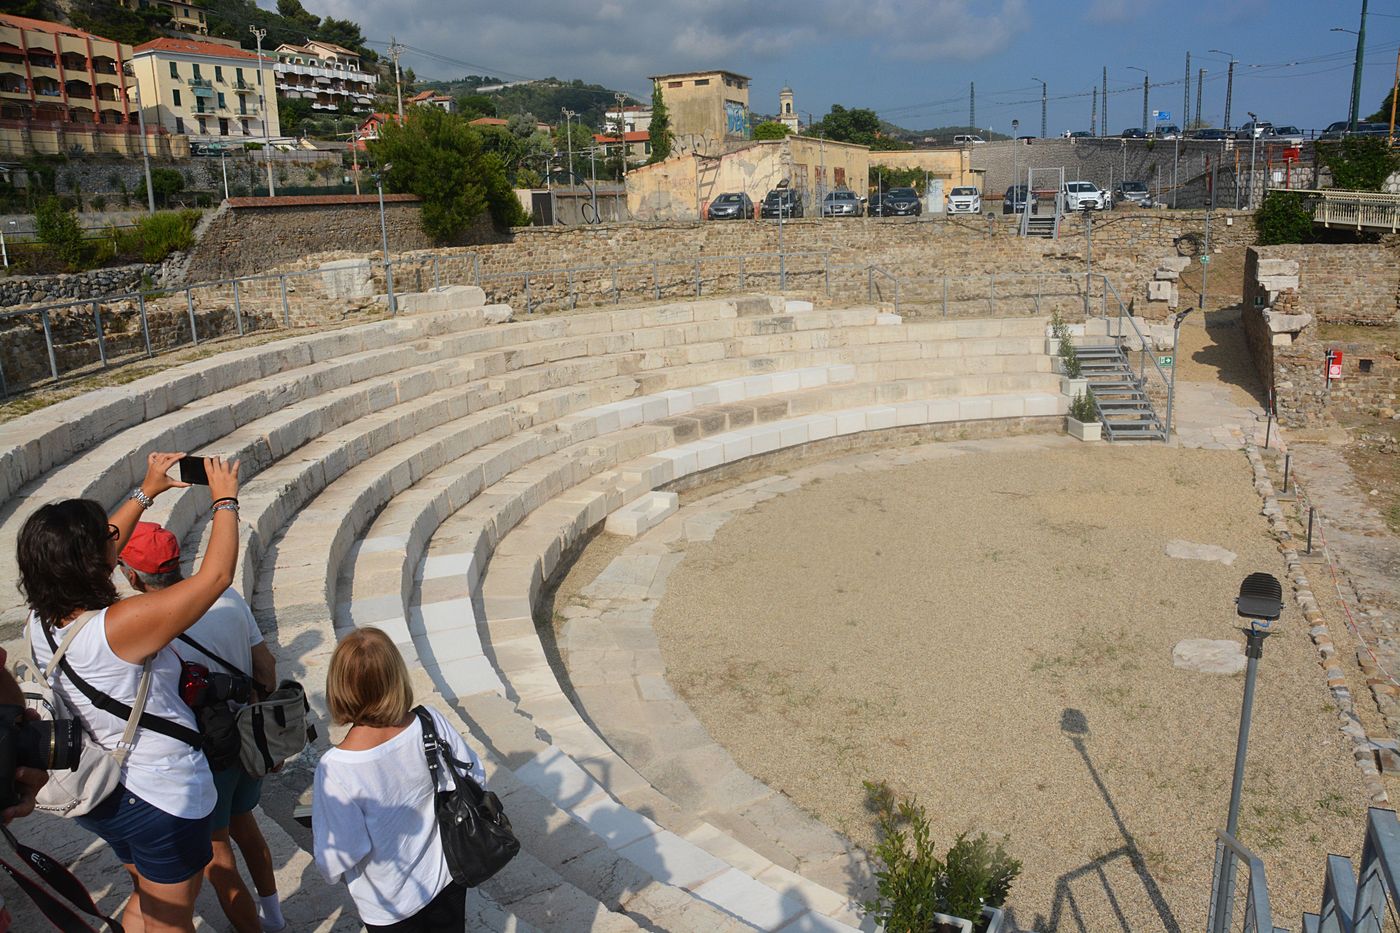 Teatro romano Ventimiglia inaugurazione apertura 7 agosto 2018_02_risultato